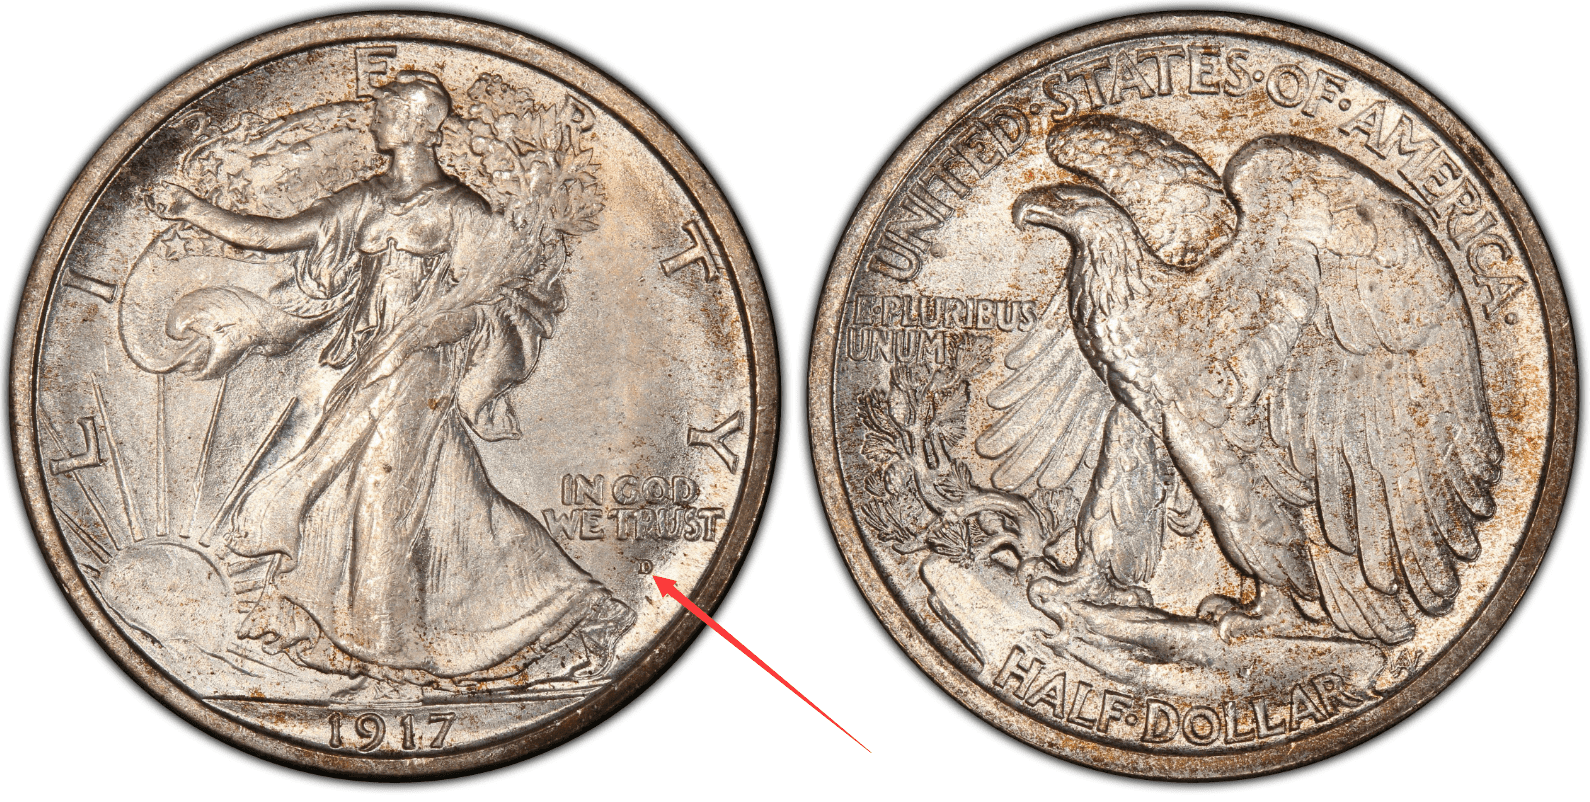 1917 D Obverse Half Dollar Value